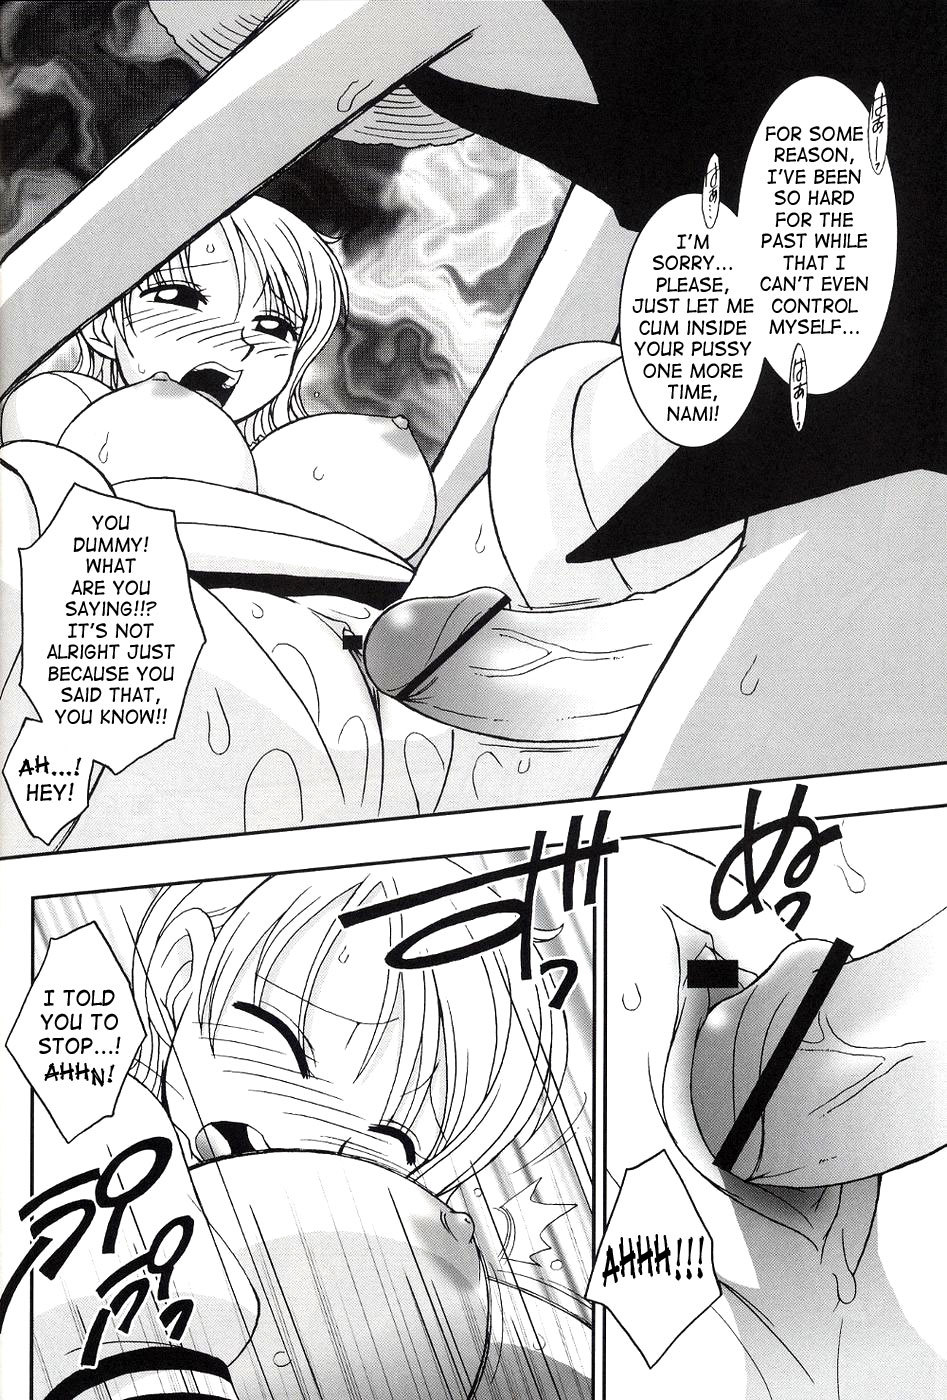 ORANGE PIE Vol.2 one piece 19 hentai manga